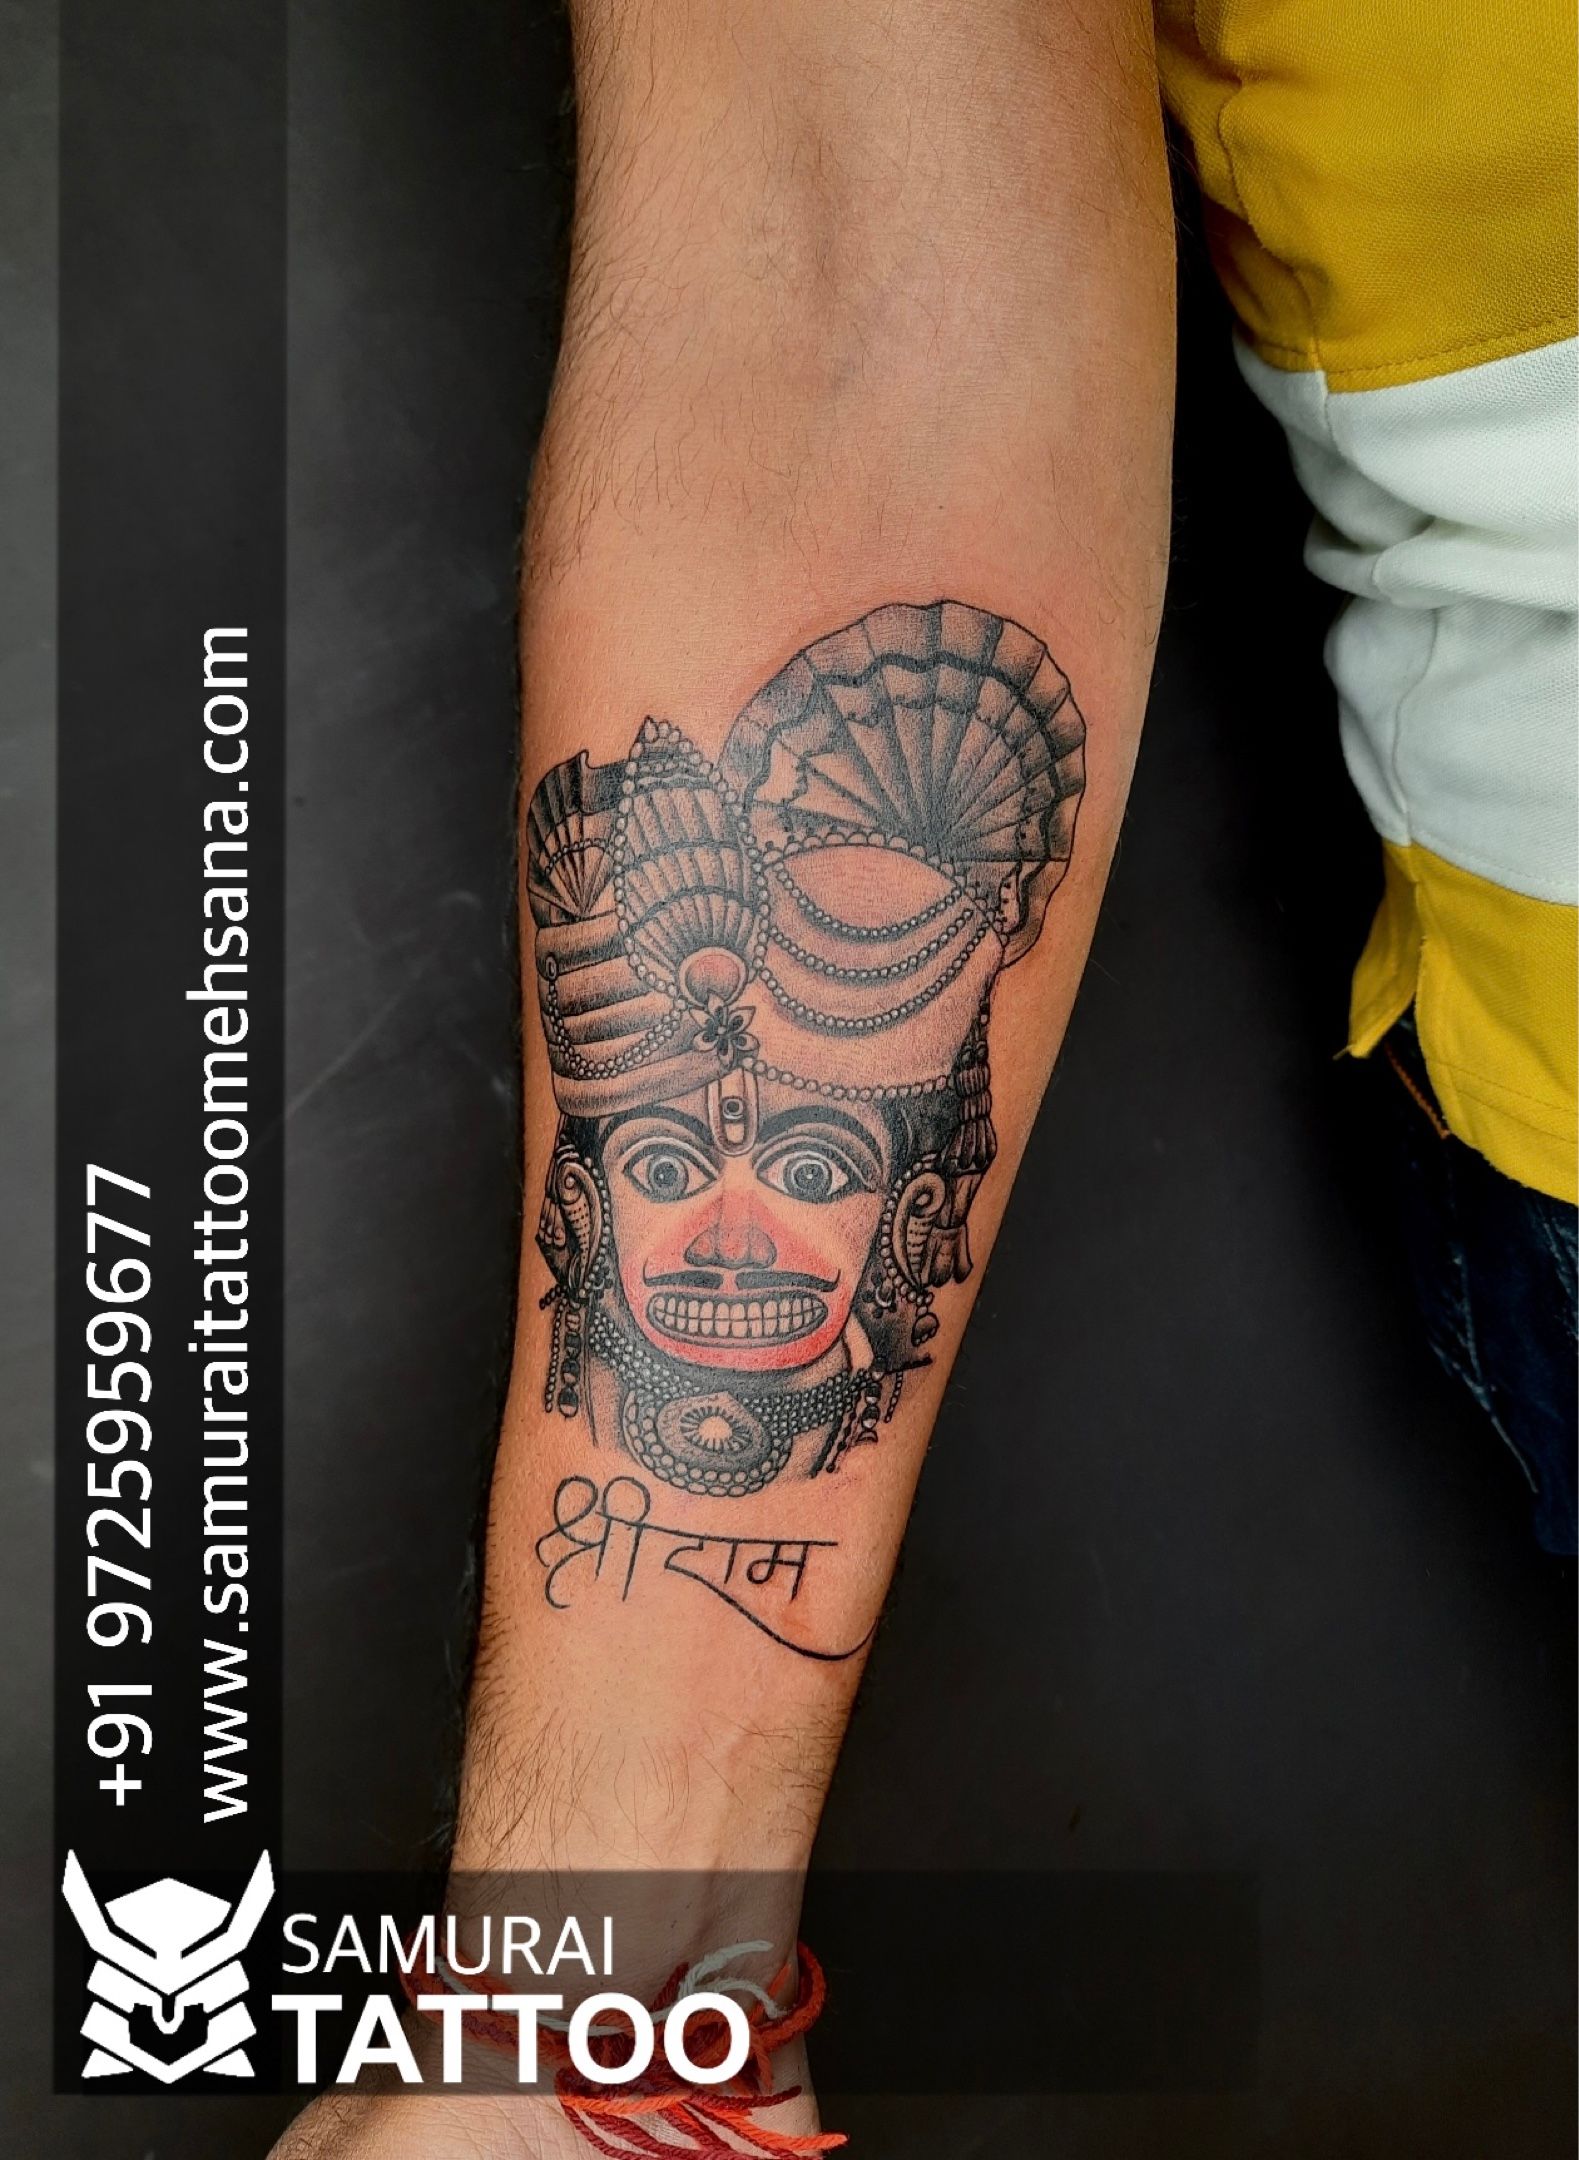 hanuman ji tattoo |Hanuman tattoo |Bajrangbali tattoo |Hanuman ji nu tattoo  | Trishul tattoo designs, Hanuman tattoo, Cover tattoo